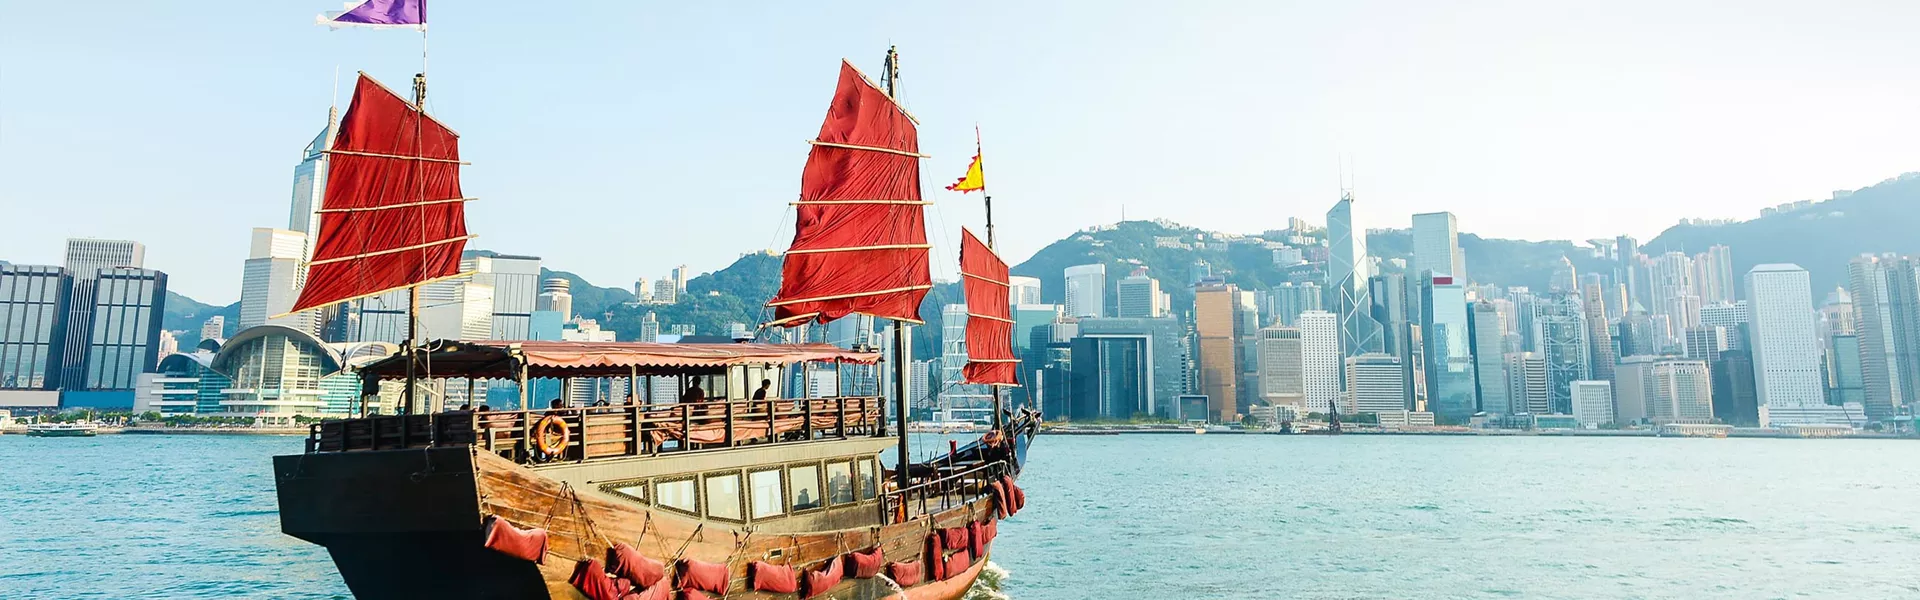 Traditional chinese boat sailing near Hong Kong